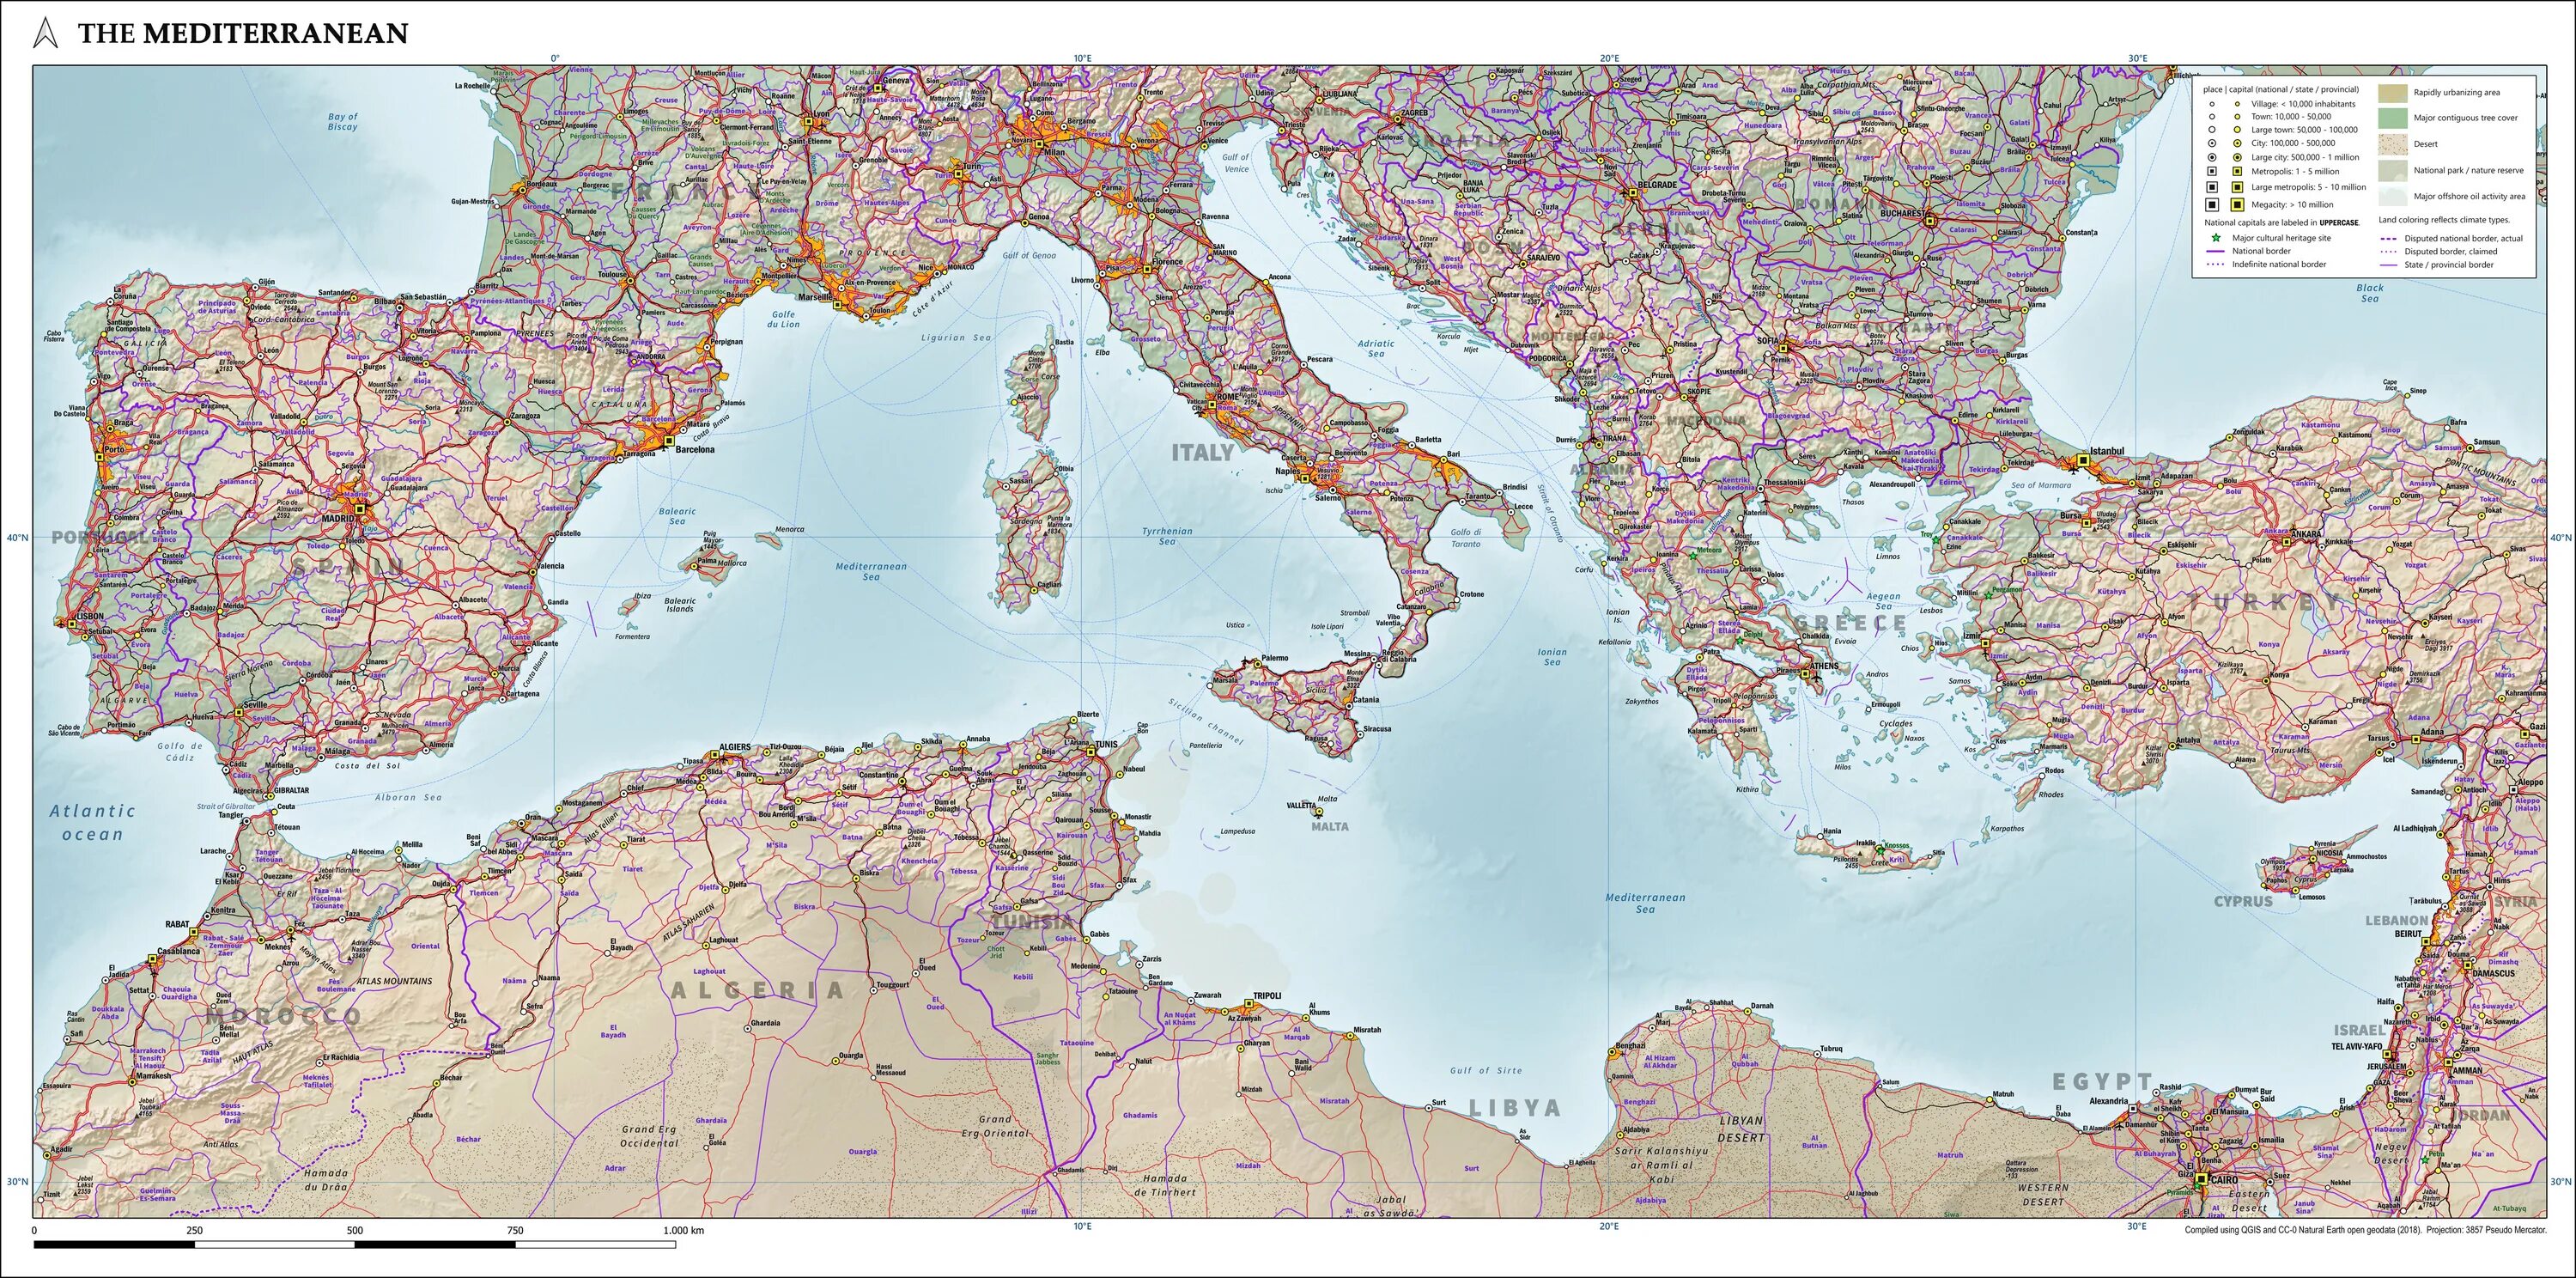 Босфор проливы средиземного моря. Пролив Босфор и Дарданеллы на карте. Средиземное море Мессинский пролив. Карта Средиземноморья. Политическая карта Средиземноморья.